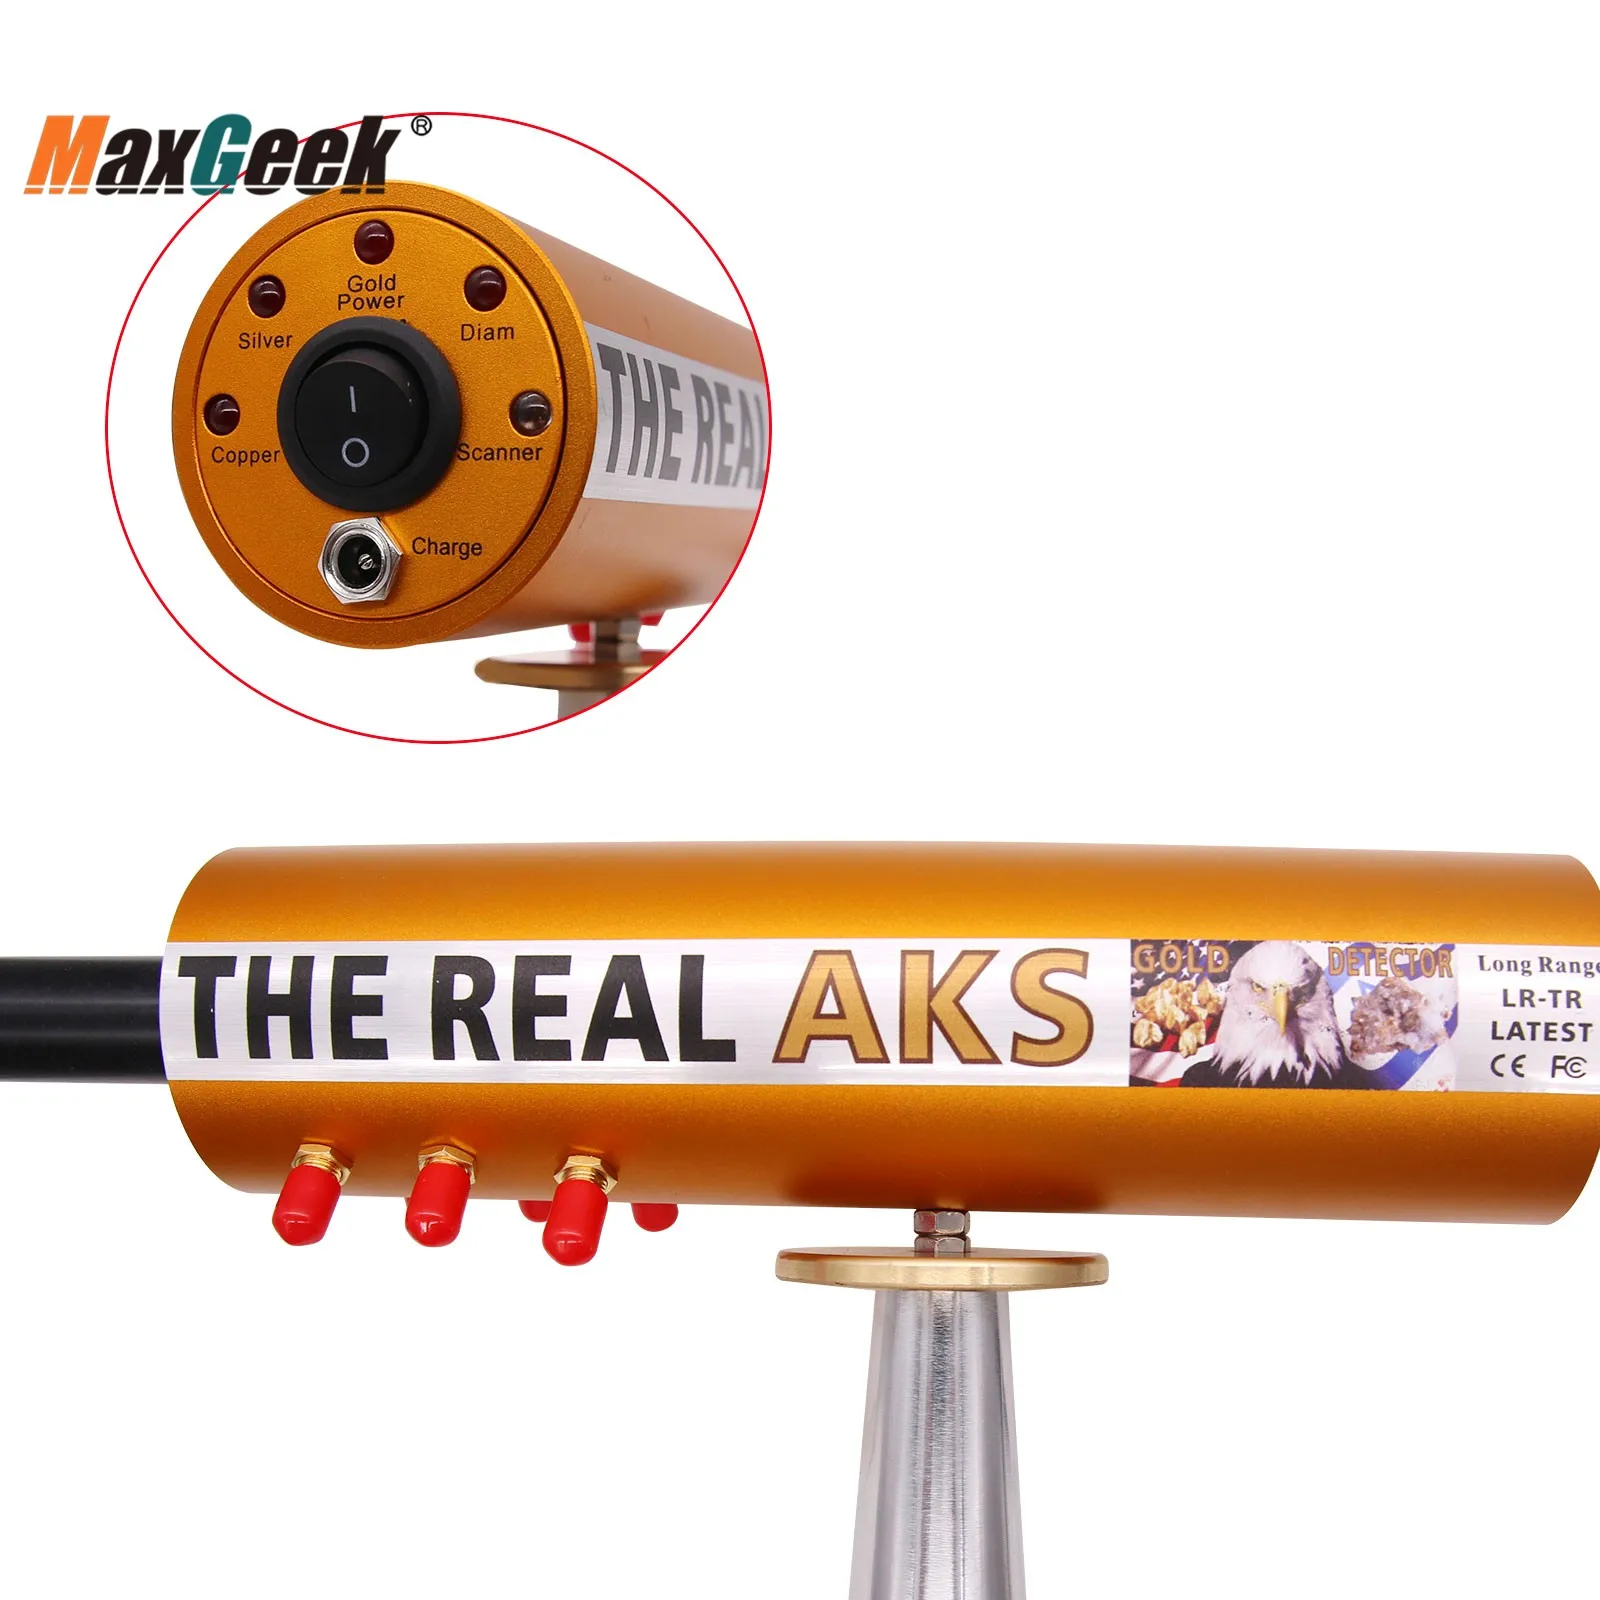 Maxgeek Real AKS Rază Lungă Detector de Metale Profesional 6 Antene Subterane de Aur Detector Gama de Căutare 1200M Adâncime 14M 4